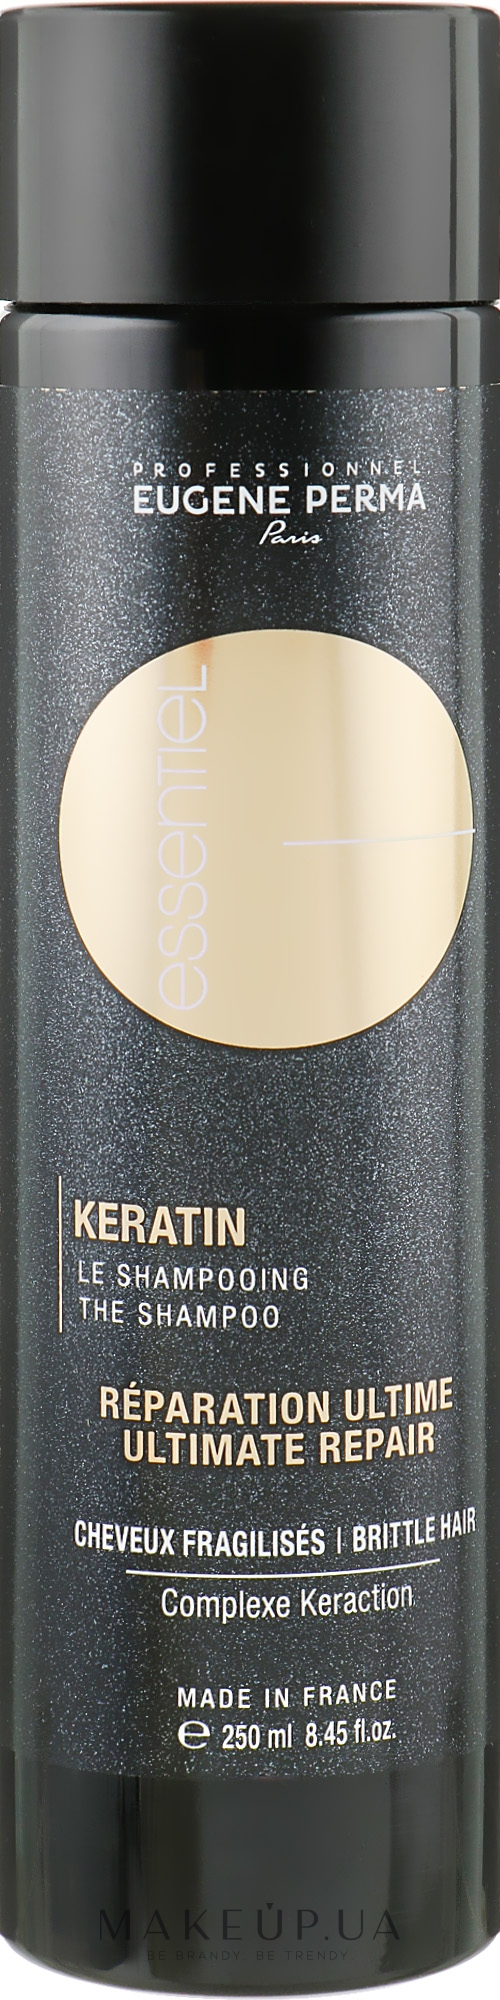 Зміцнюючий шампунь для волосся - Eugene Perma Essentiel Keratin Shampoo — фото 250ml